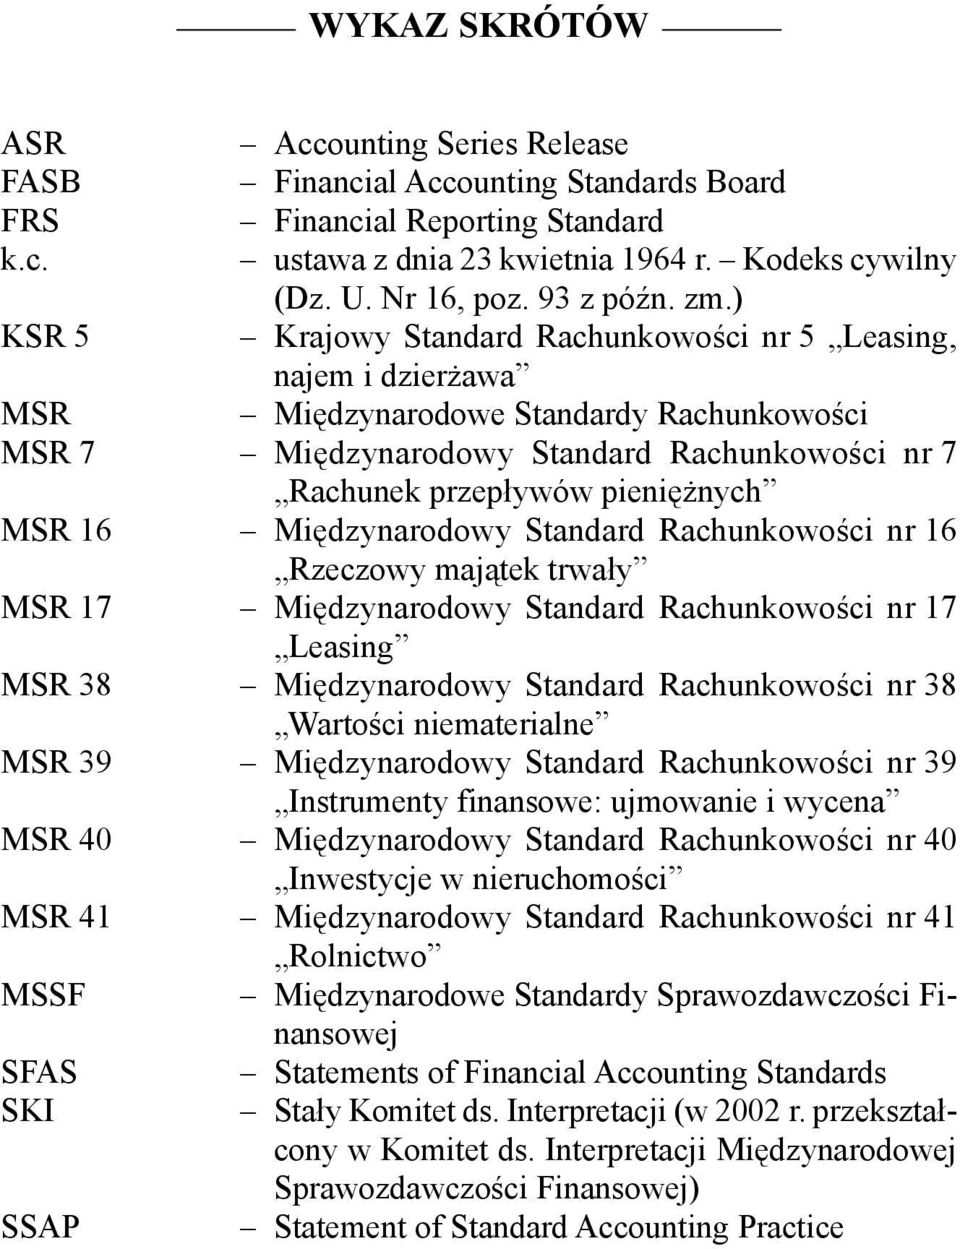 ) KSR 5 Krajowy Standard Rachunkowości nr 5 Leasing, najem i dzierżawa MSR Międzynarodowe Standardy Rachunkowości MSR 7 Międzynarodowy Standard Rachunkowości nr 7 Rachunek przepływów pieniężnych MSR